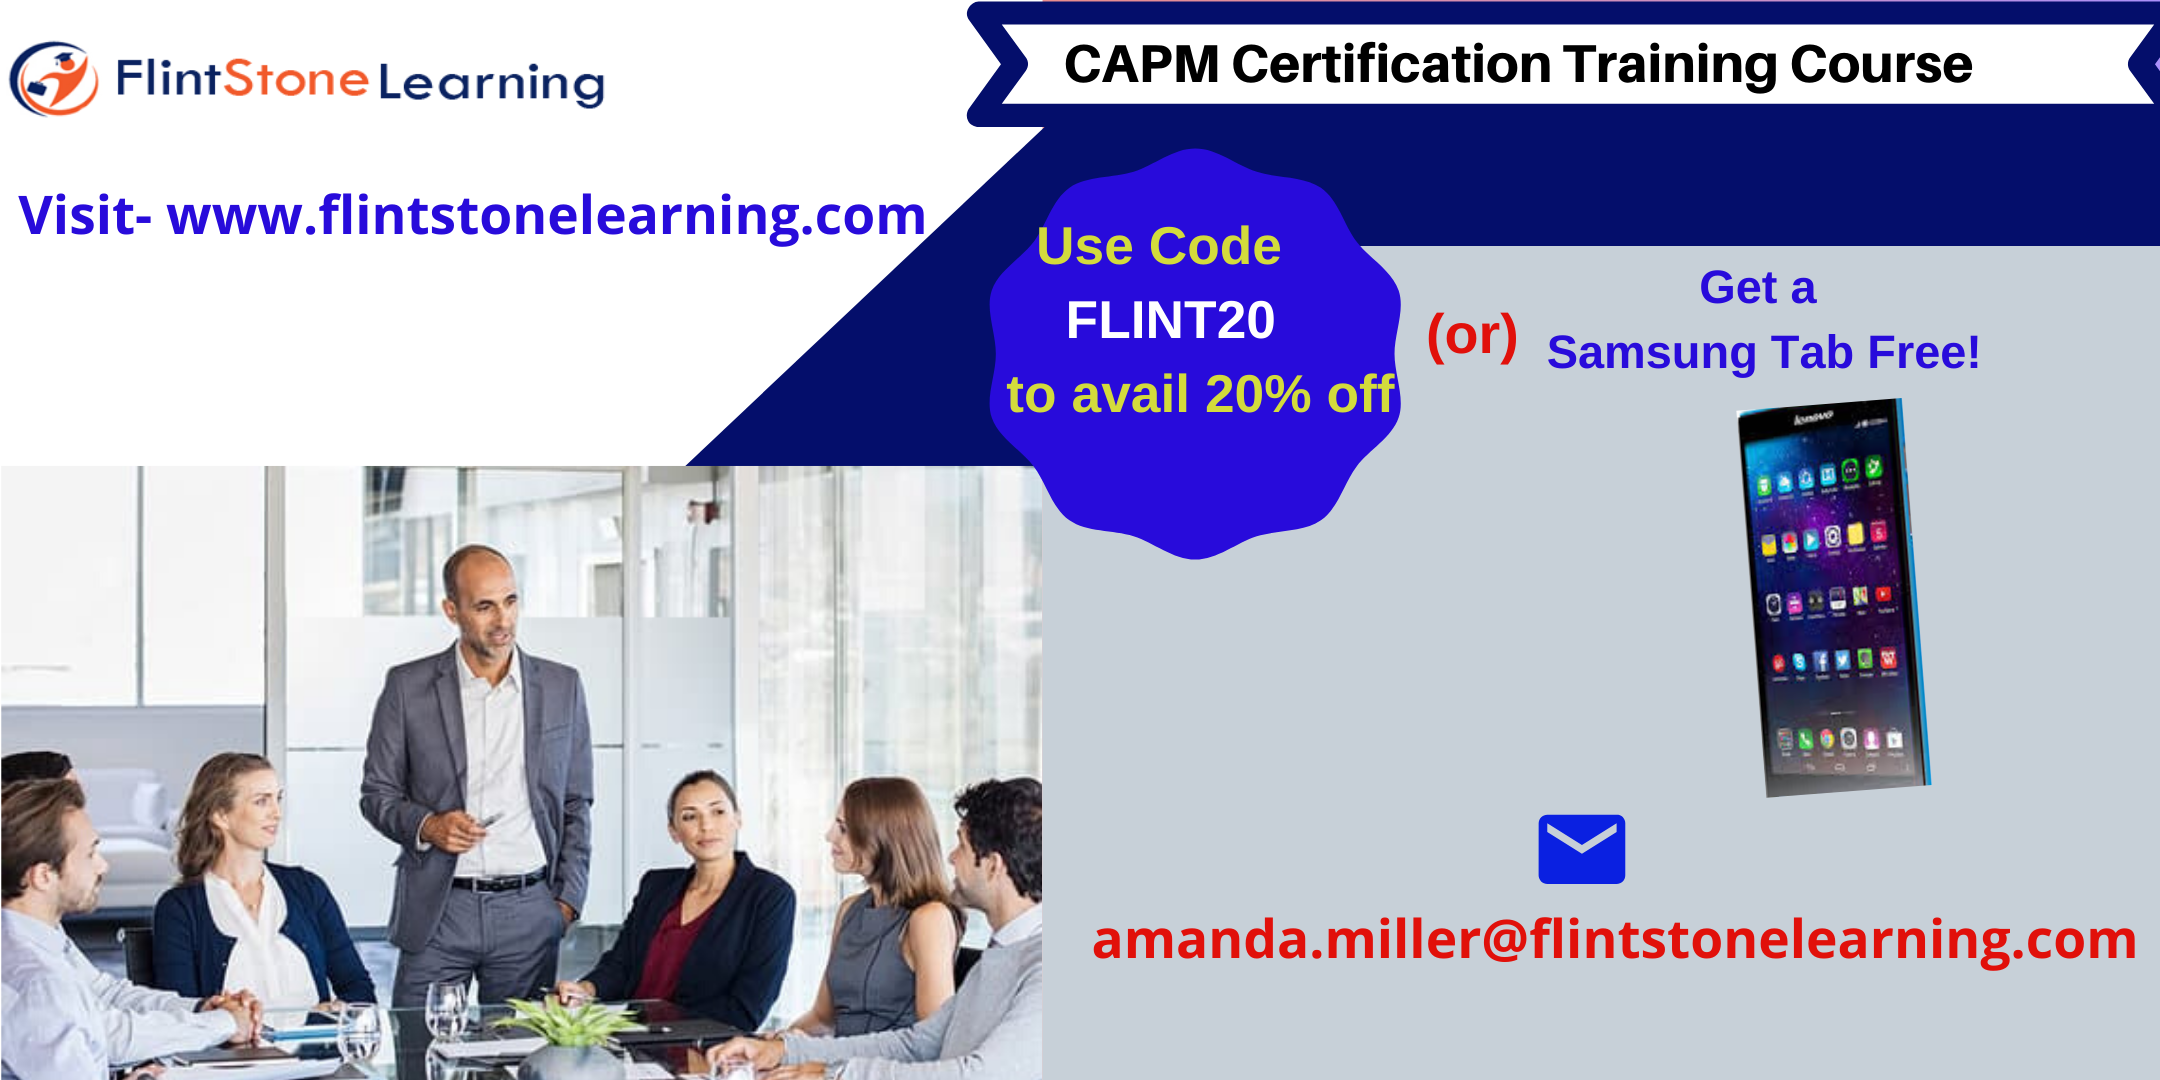 CAPM Certification Training Course in Surprise, AZ